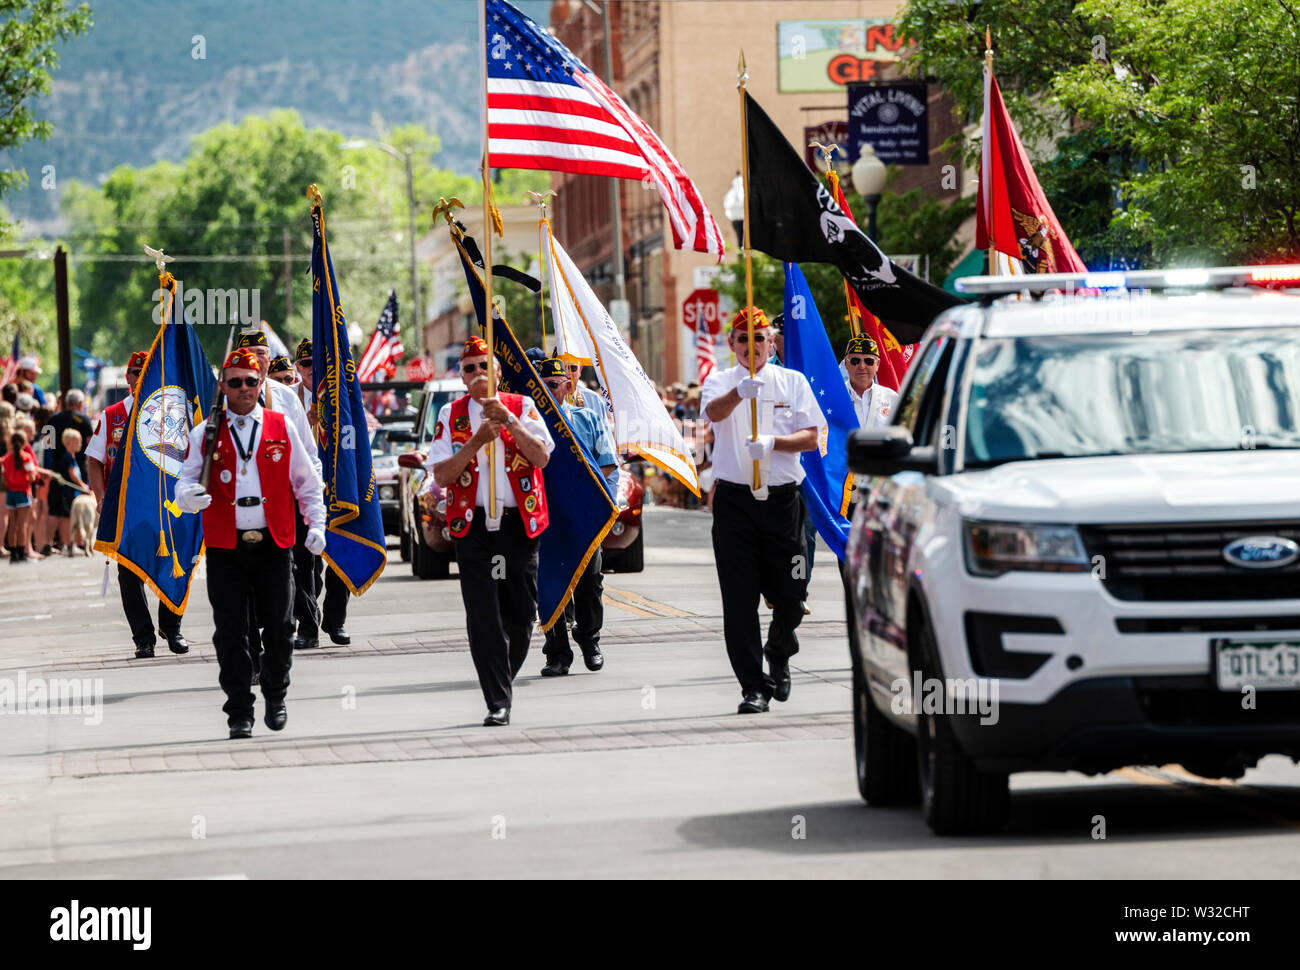 Les anciens combattants de la Légion américaine laisse la quatrième de juillet parade dans la petite ville de montagne du Colorado de salida. Banque D'Images